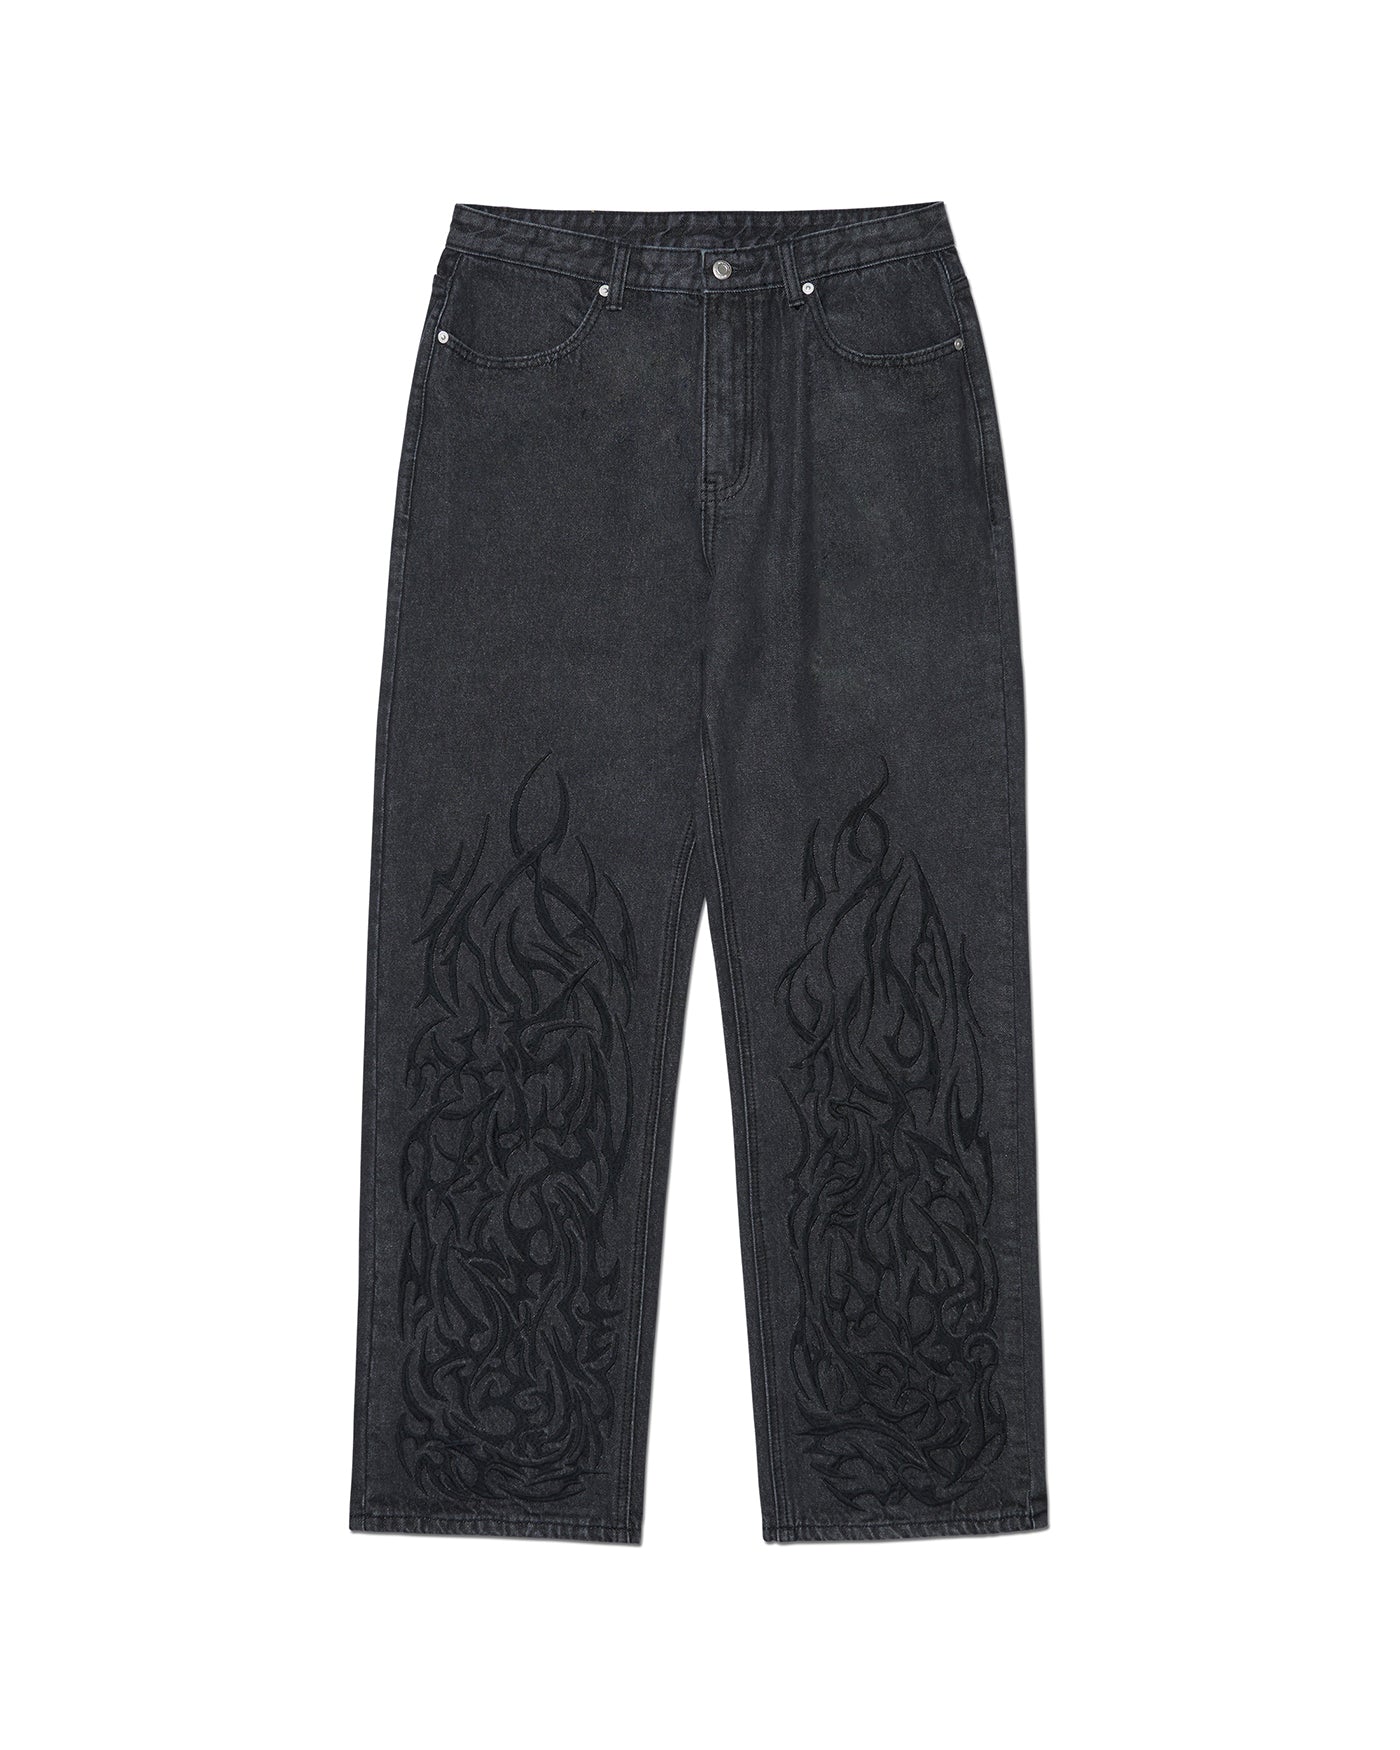 ロングジッパー デニムパンツ / Long Zipper Denim Pants (Black) – 60